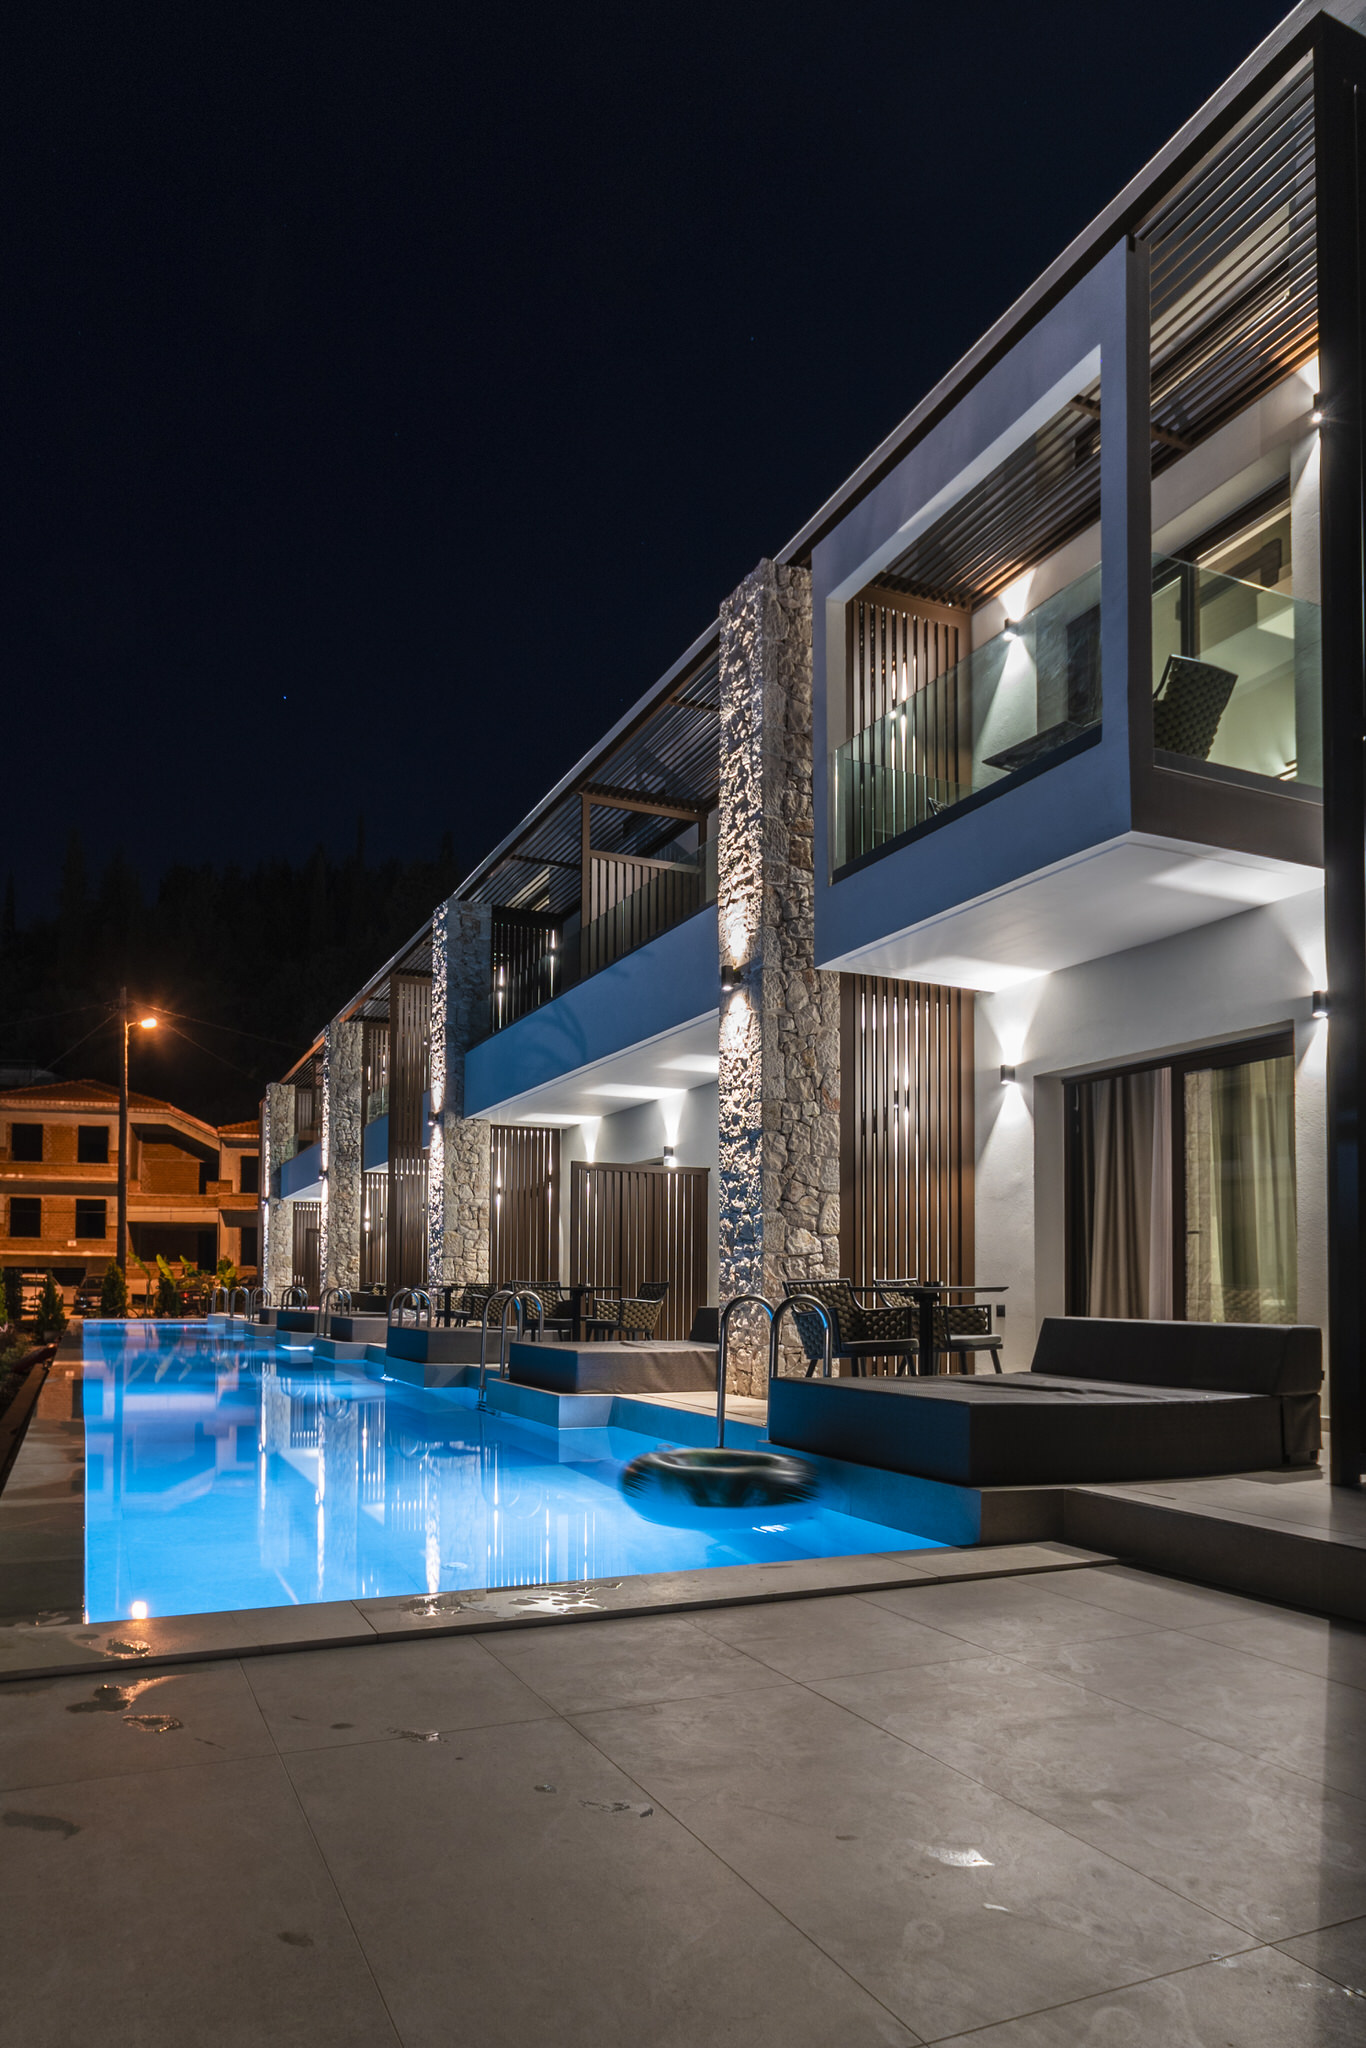 Lango Luxury Living - Rooms to Let @ Sivota, Greece